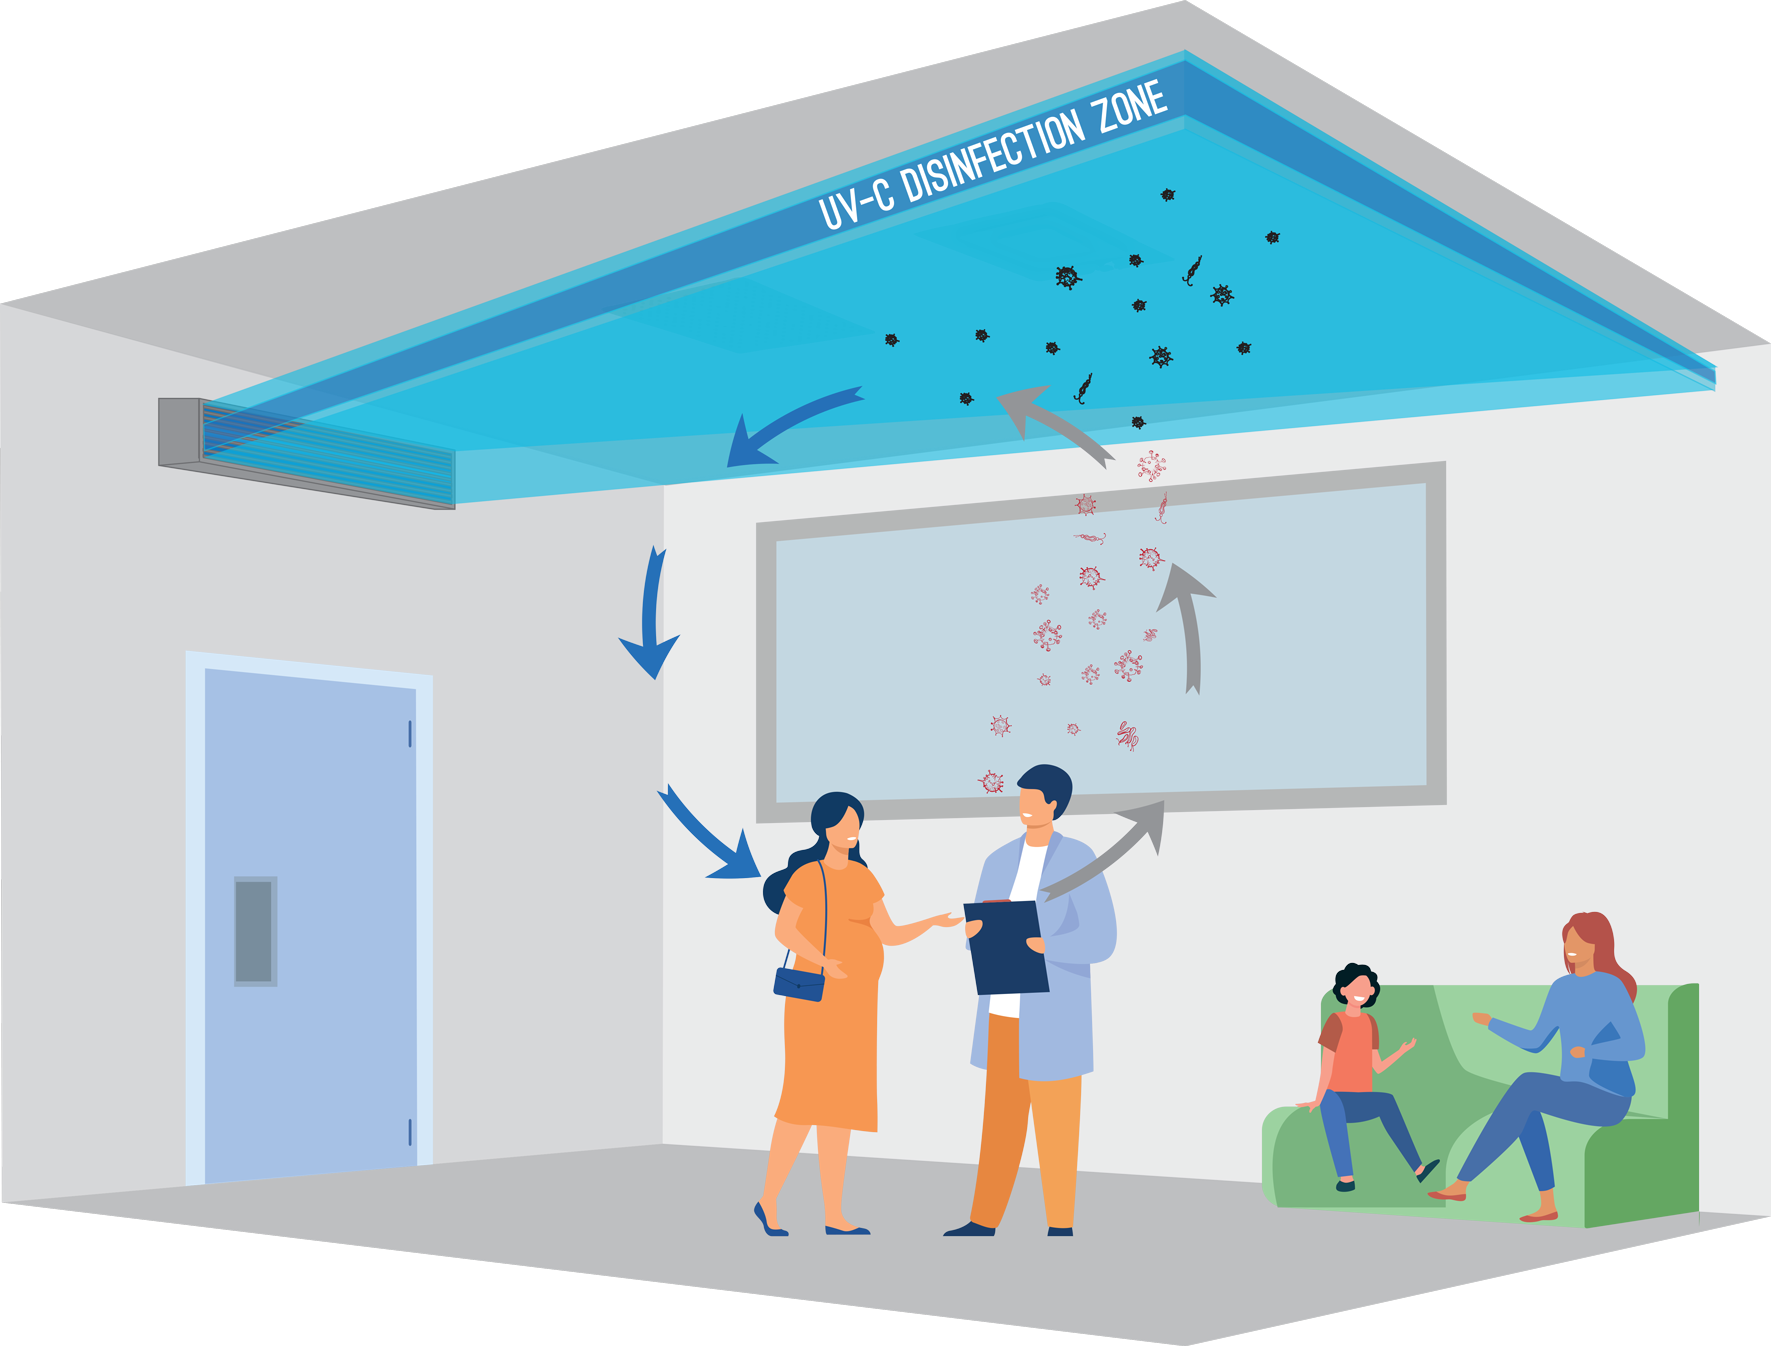 Upper air disinfection- dezinfekcia vzduchu v hornej časti miestnosti